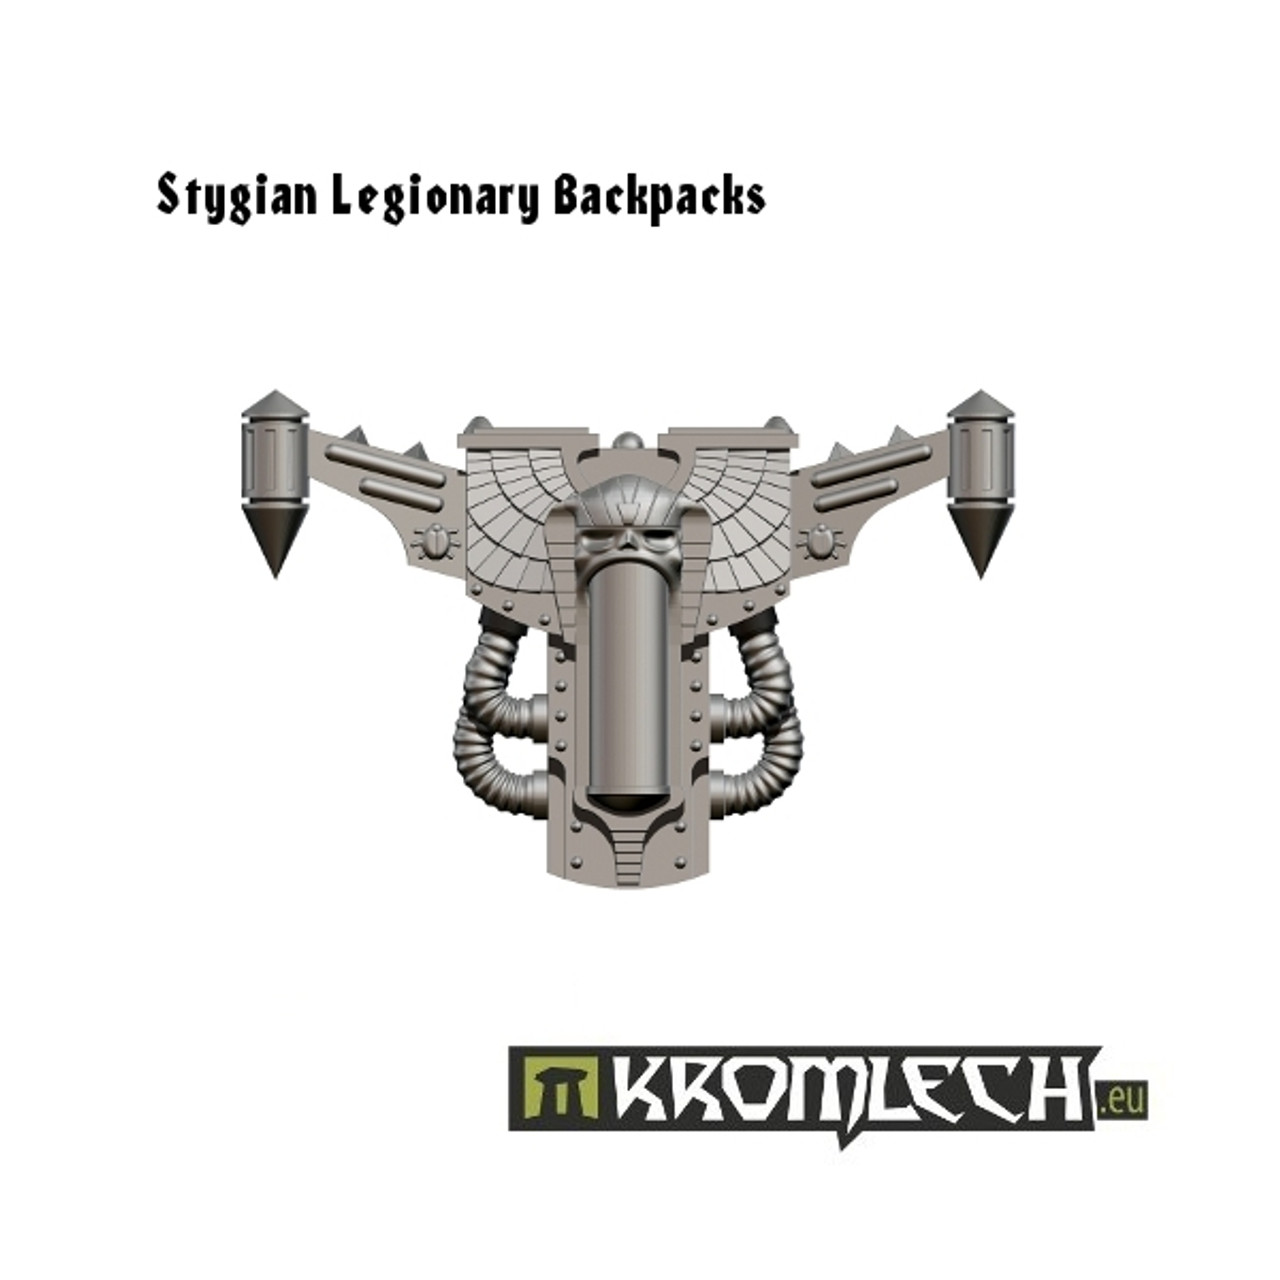 Stygian Legionary Backpacks (5) - KRCB140